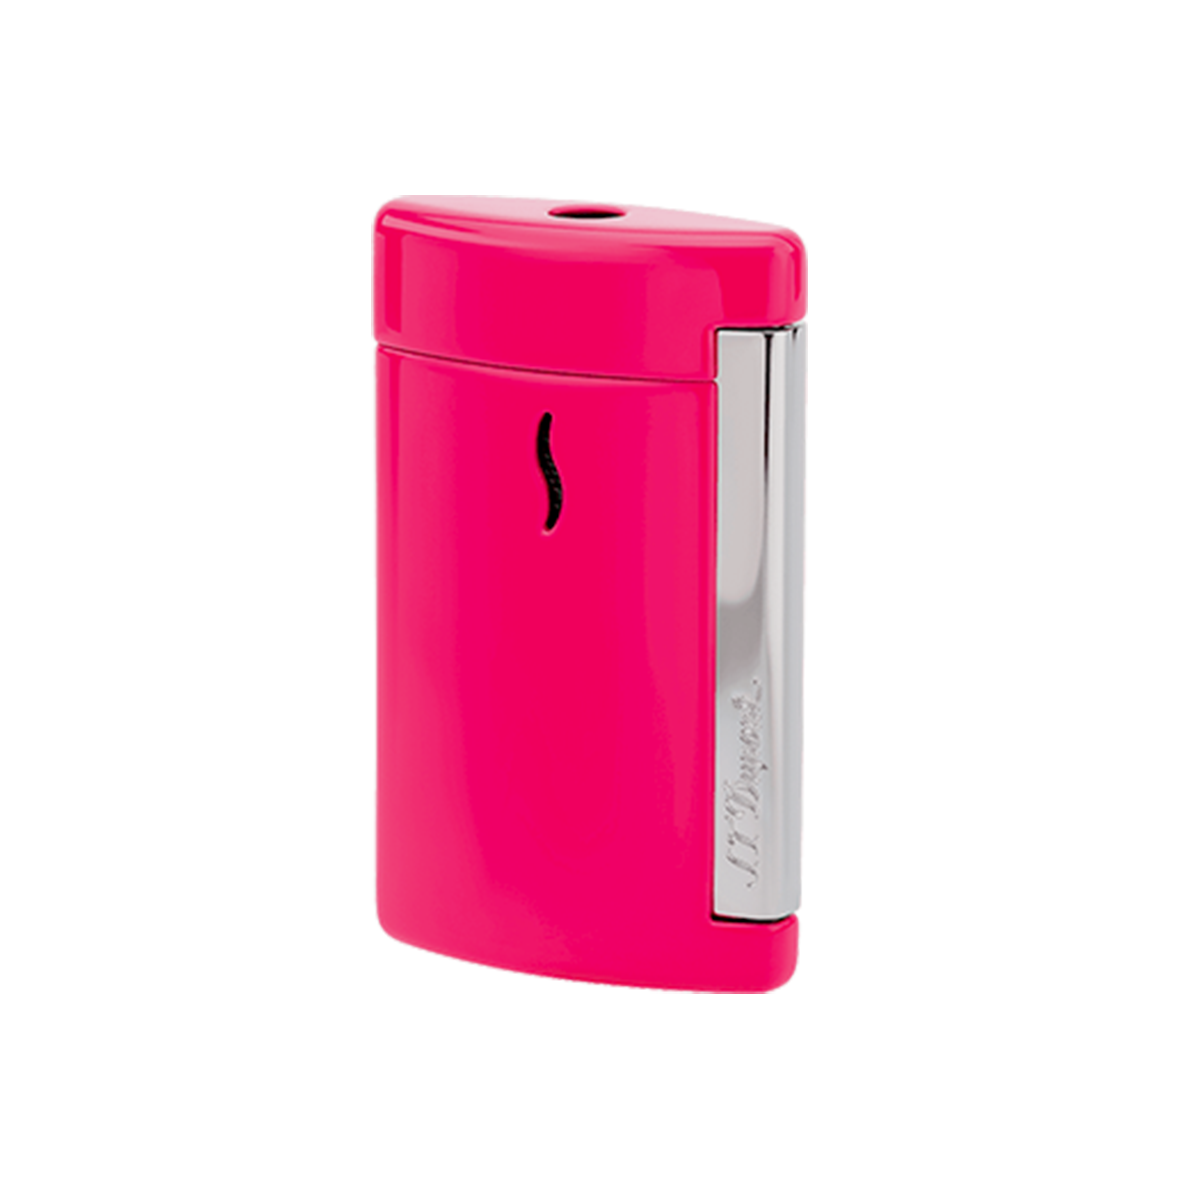 Зажигалка Minijet 10514 Цвет Розовый Отделка натуральным лаком и хромом | S.T. Dupont